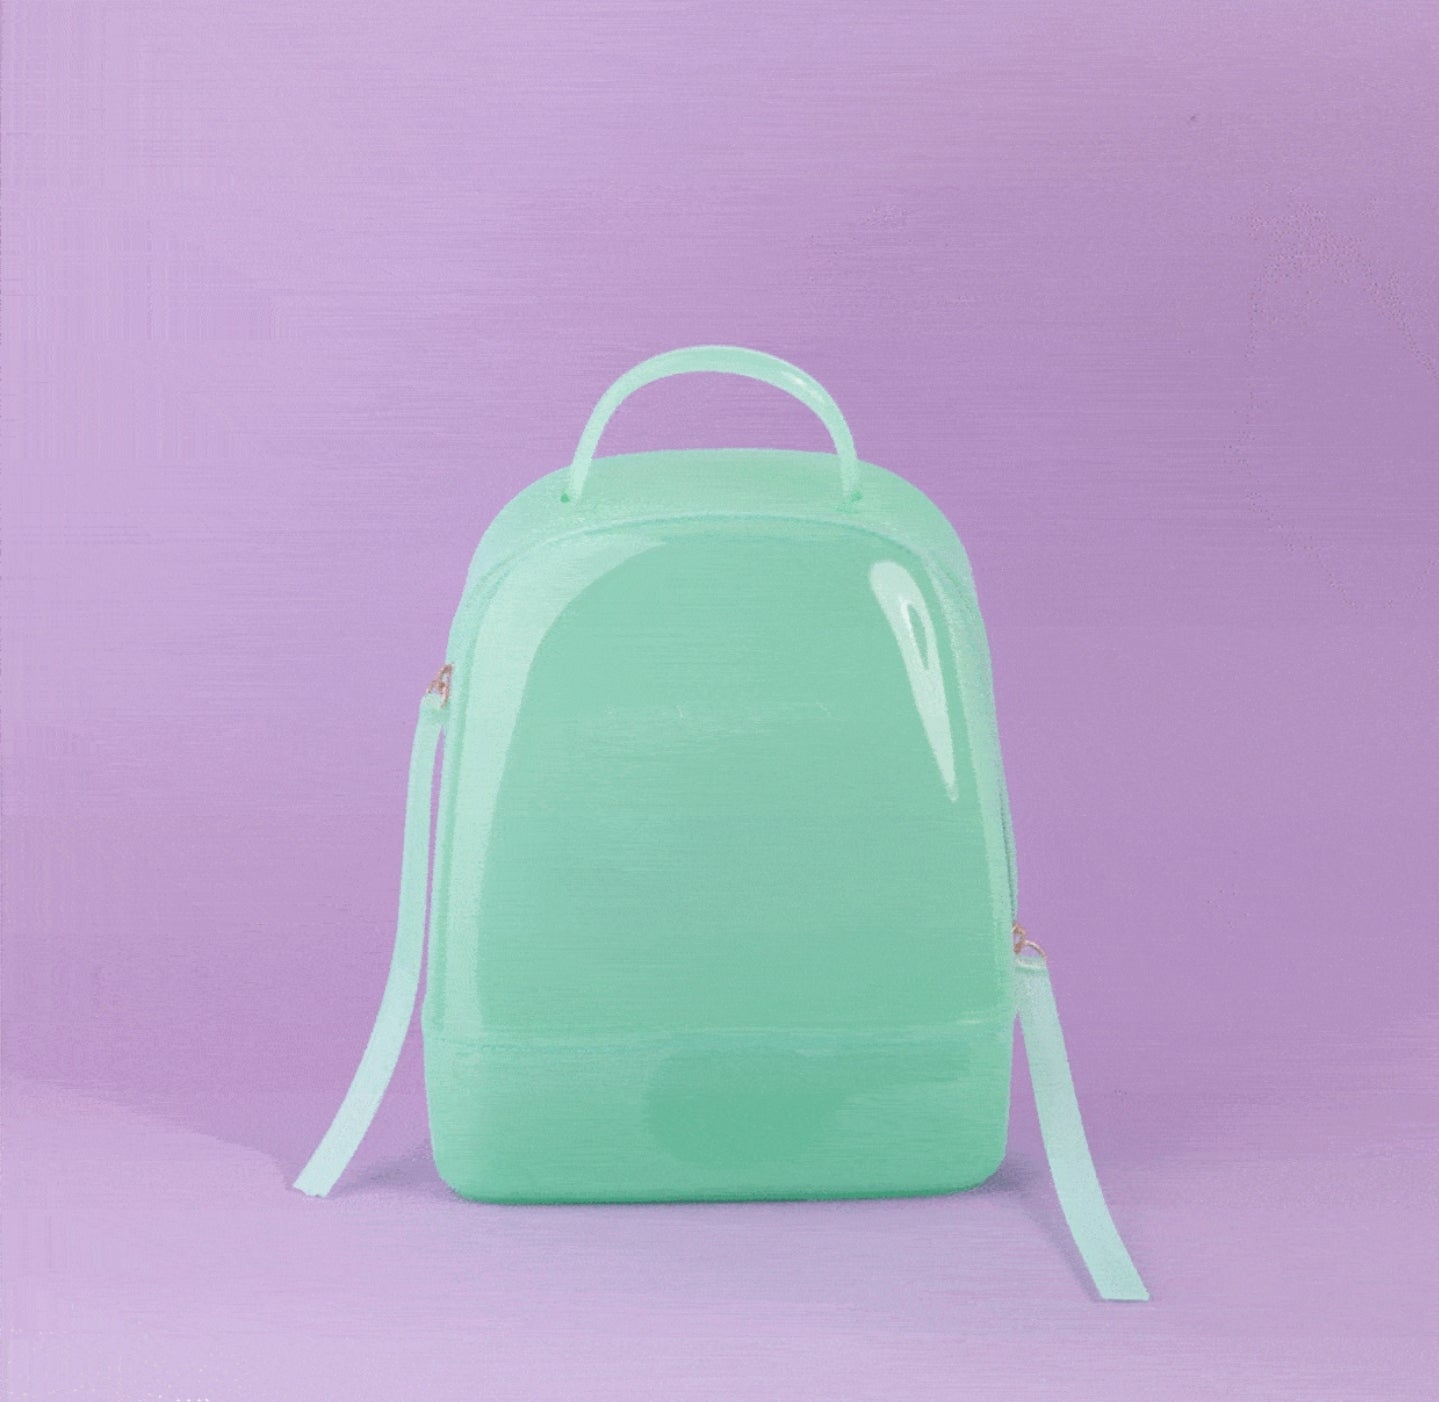 Huda Beauty mint backpack